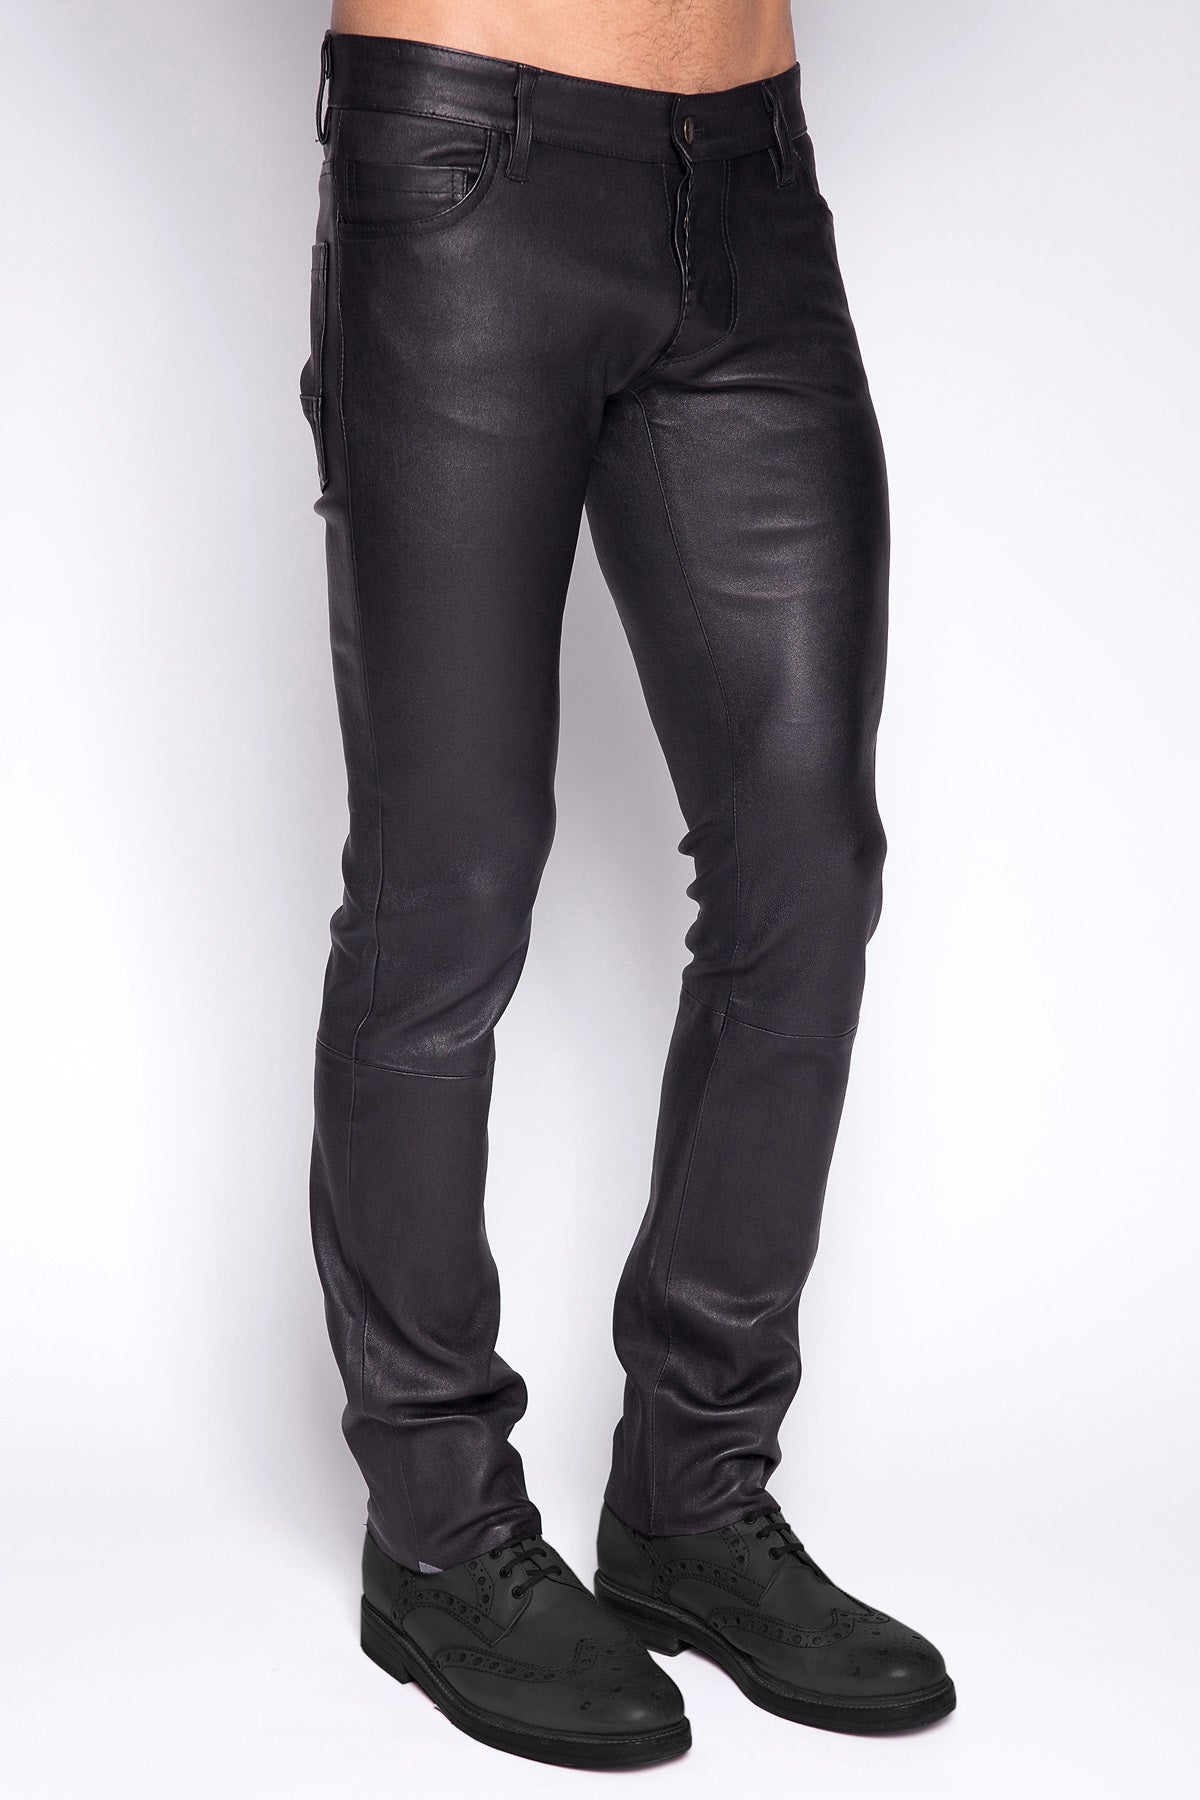 pantalon pour homme en cuir noir de luxe